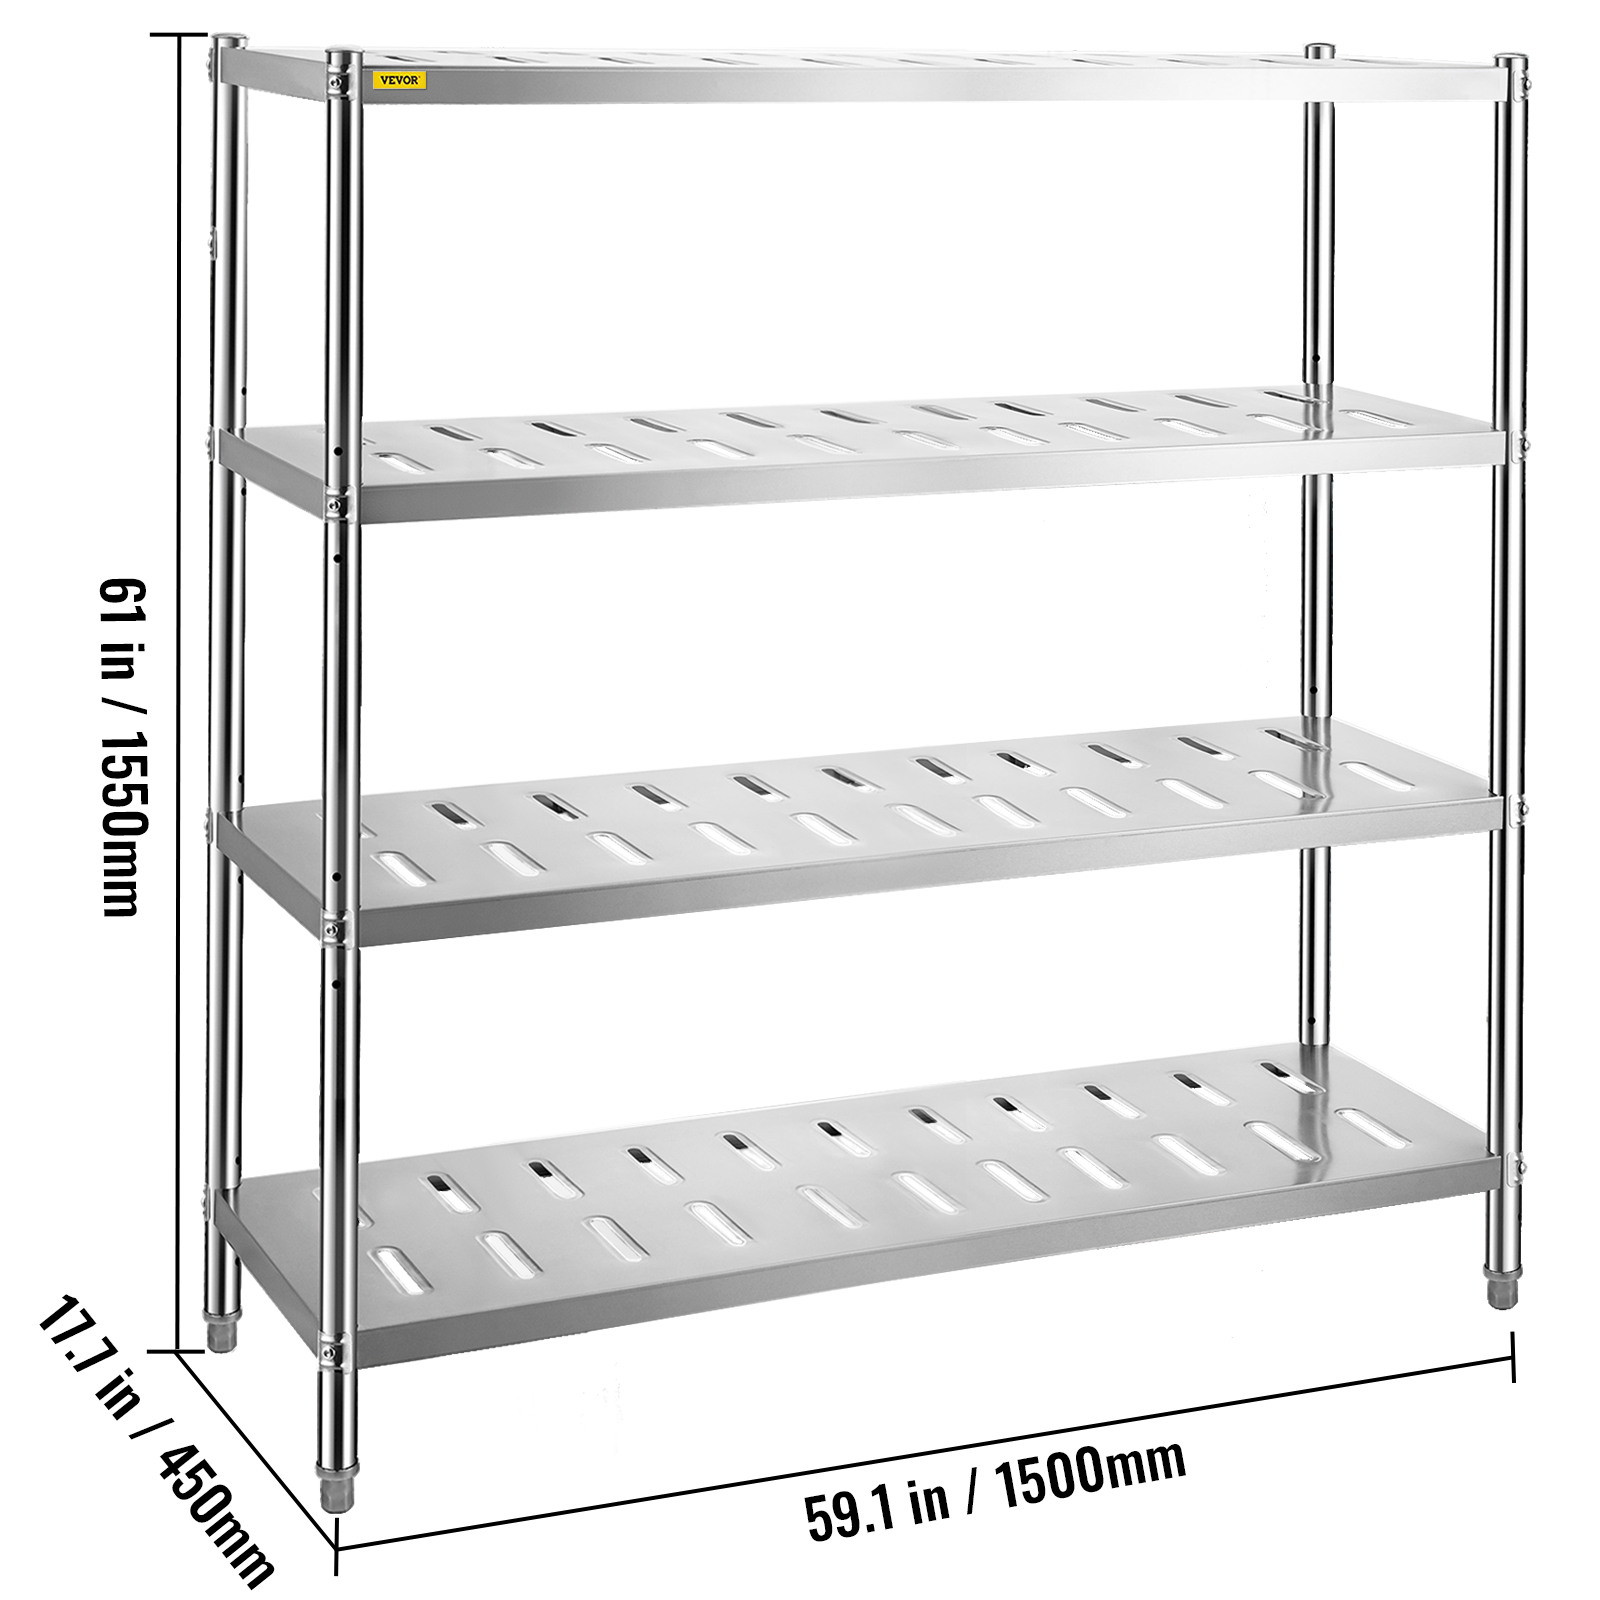 VEVORbrand 4-Tier Shelf Stainless Steel Shelving 330LB Capacity